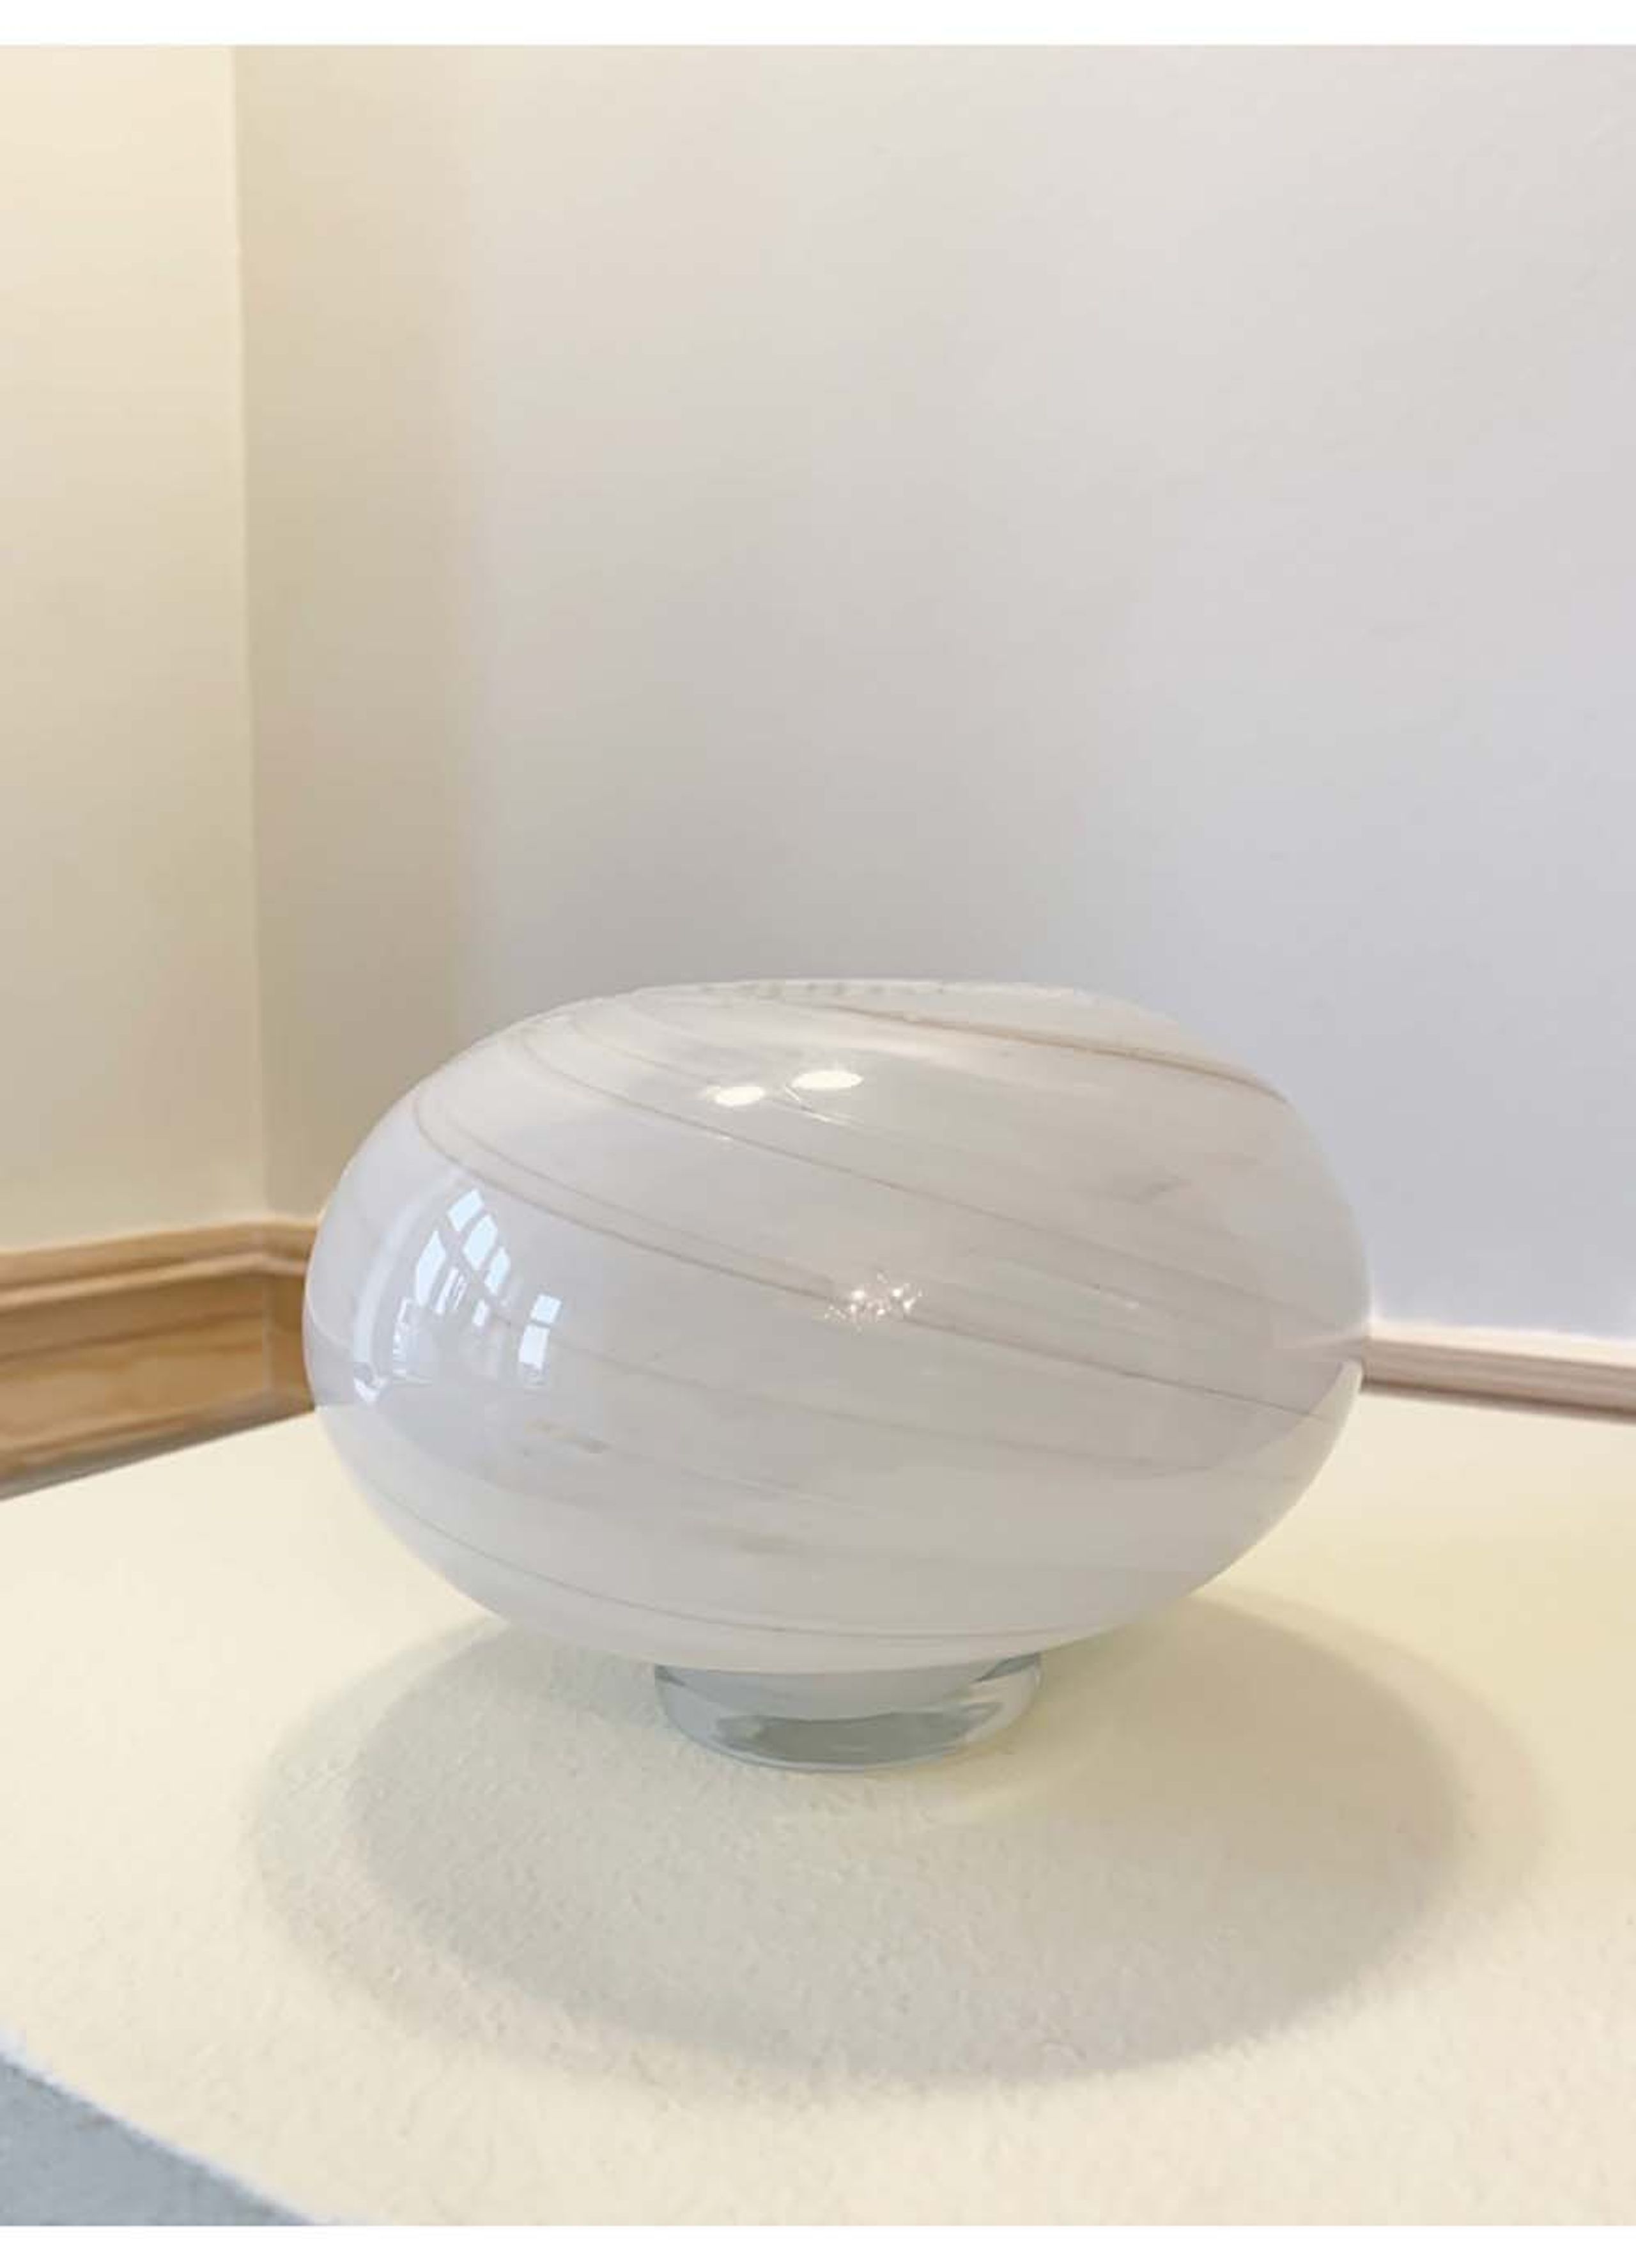 eden outcast - Vaso - Twirl Vase - Twirl Vase White Mini